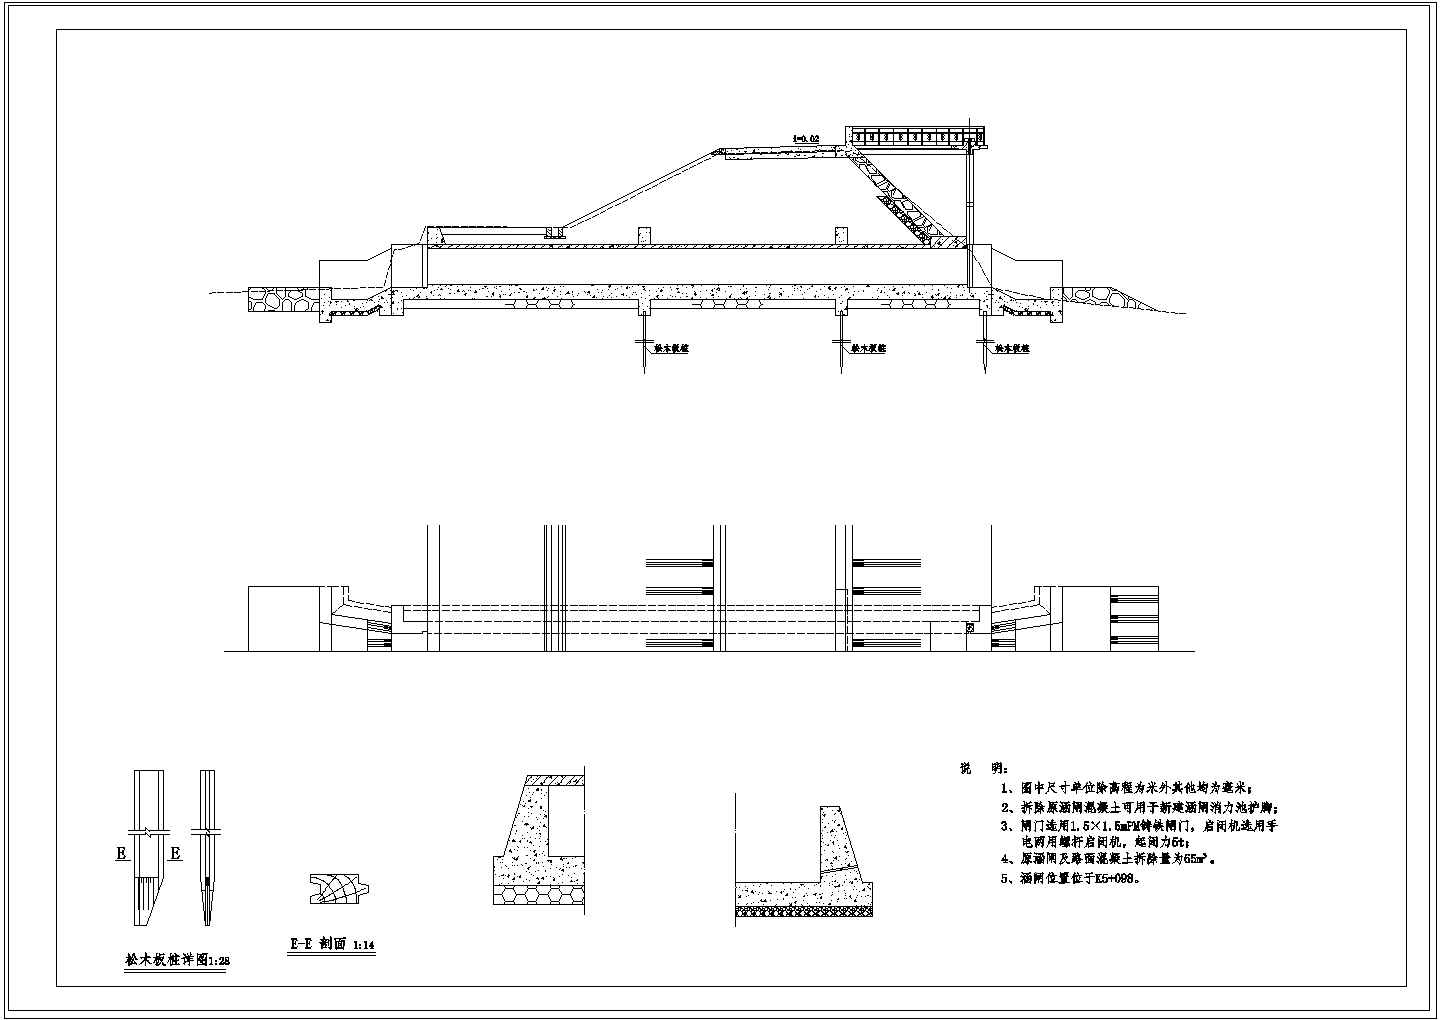 海堤单孔涵闸结构设计图纸